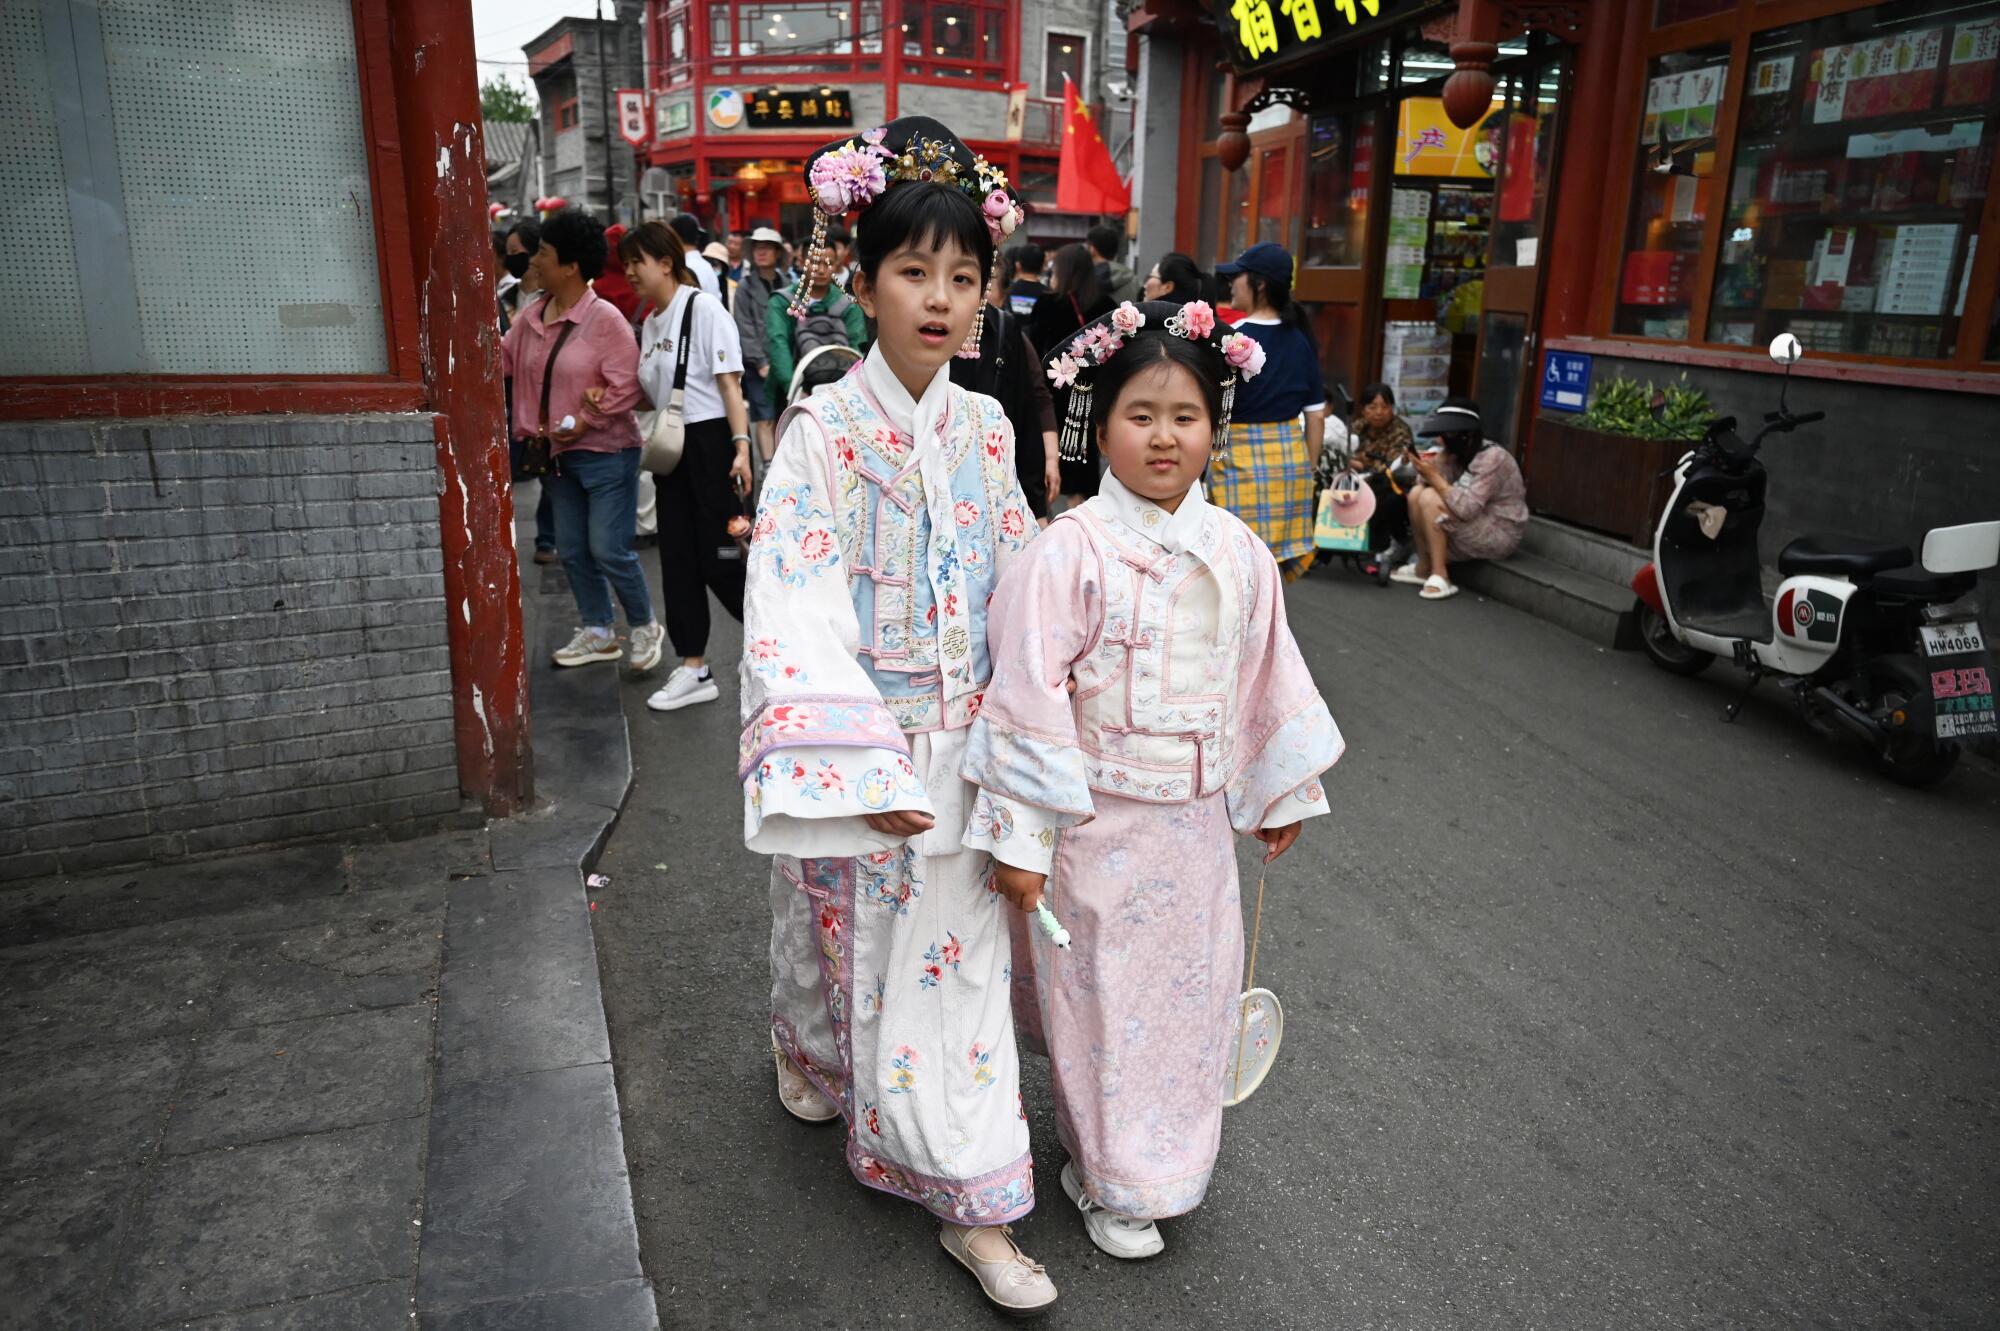 دو دختر با لباس‌های پاستلی روان و سنتی در یک منطقه خرید توریستی قدم می‌زنند